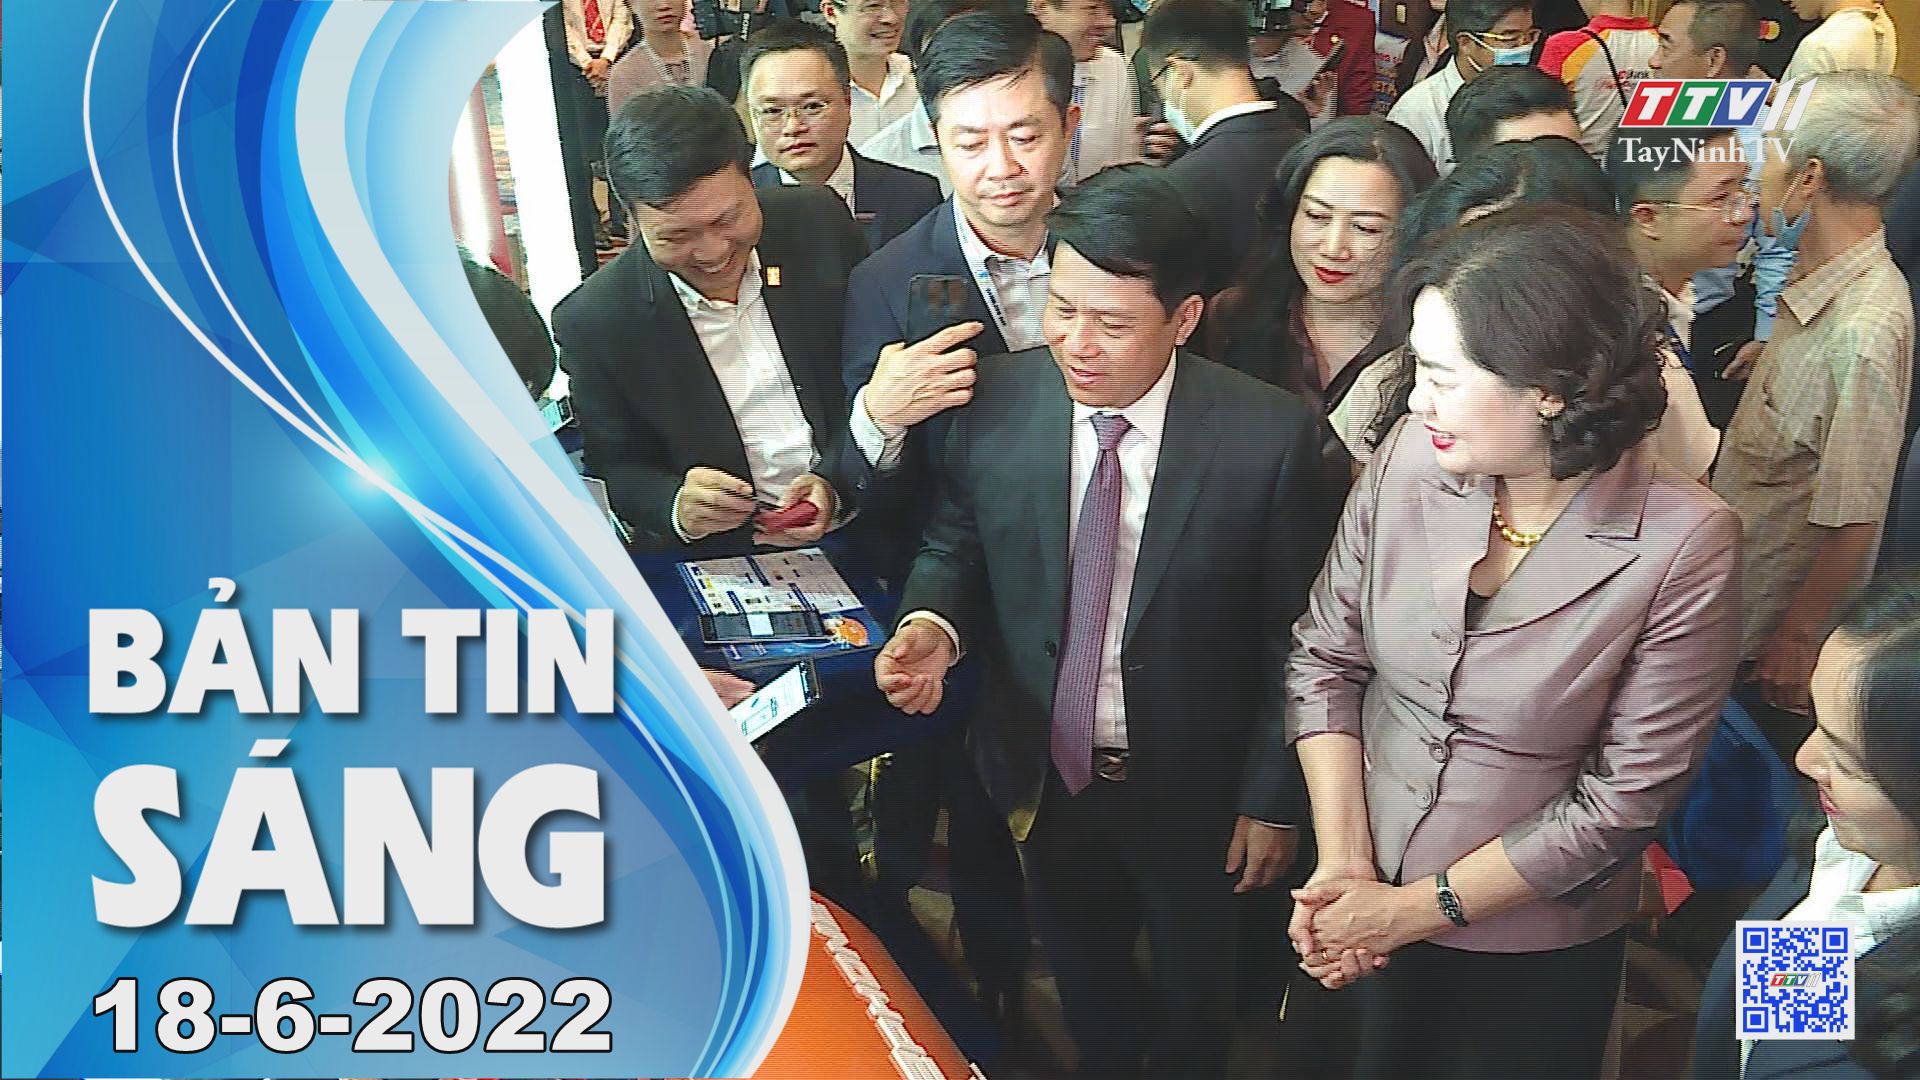 Bản tin sáng 18-6-2022 | Tin tức hôm nay | TayNinhTV